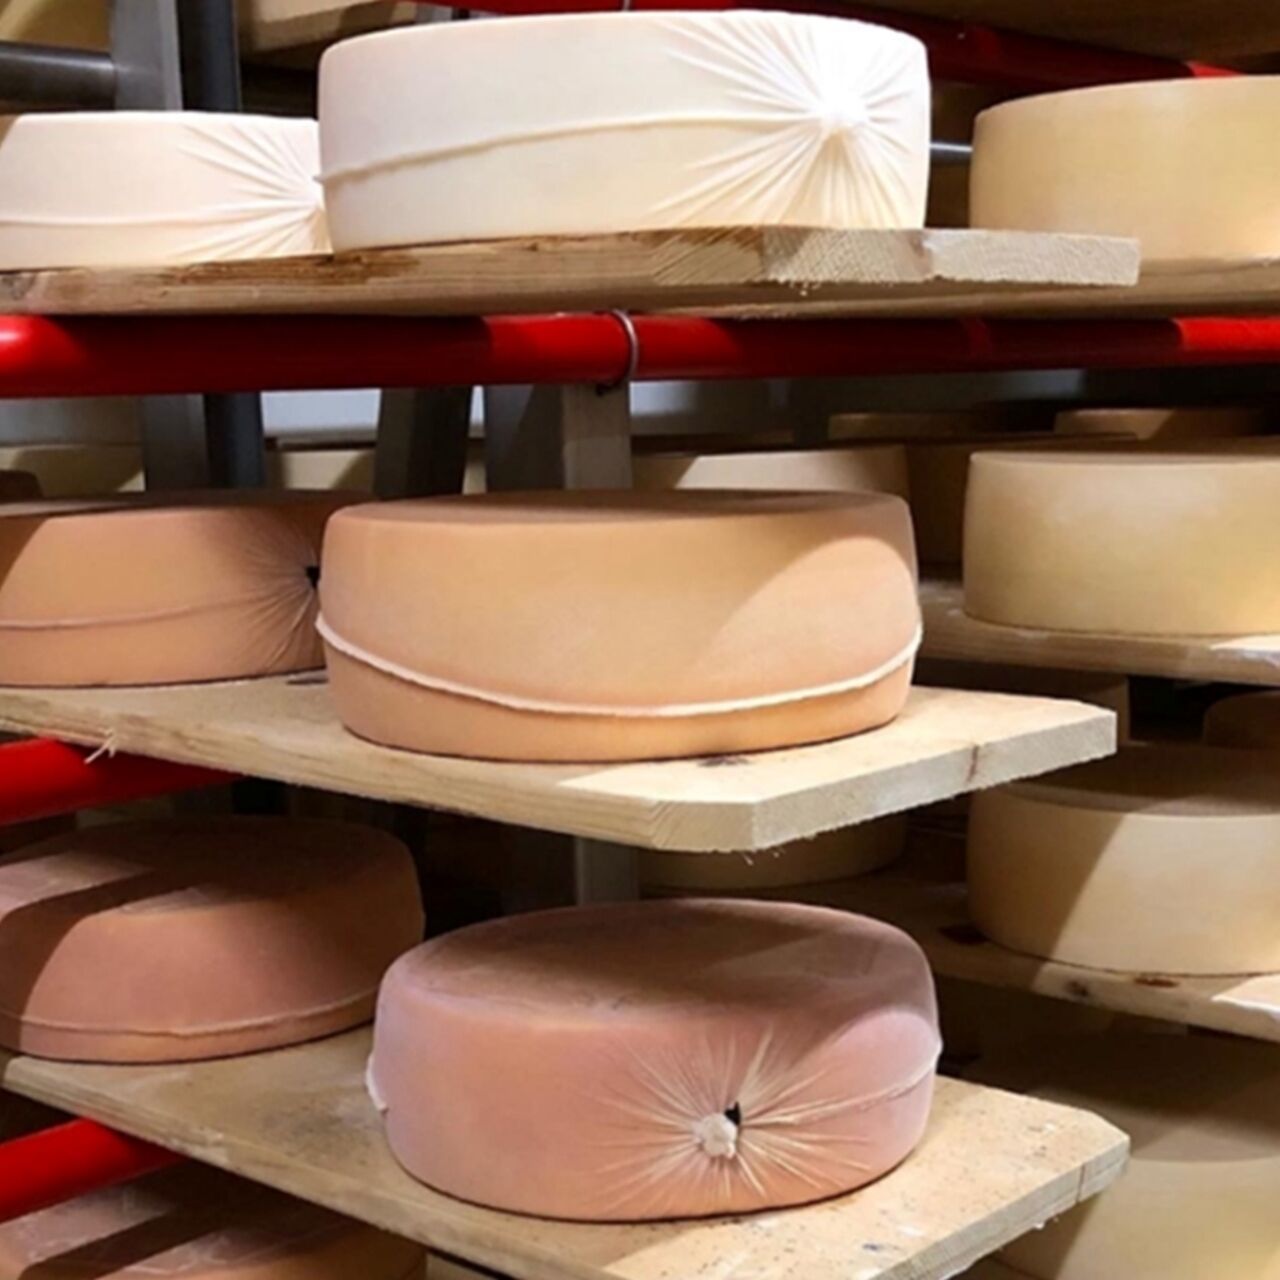 Formaggio: formaggi appena confezionati con la stagionatura fino a tre mesi e incartati con la nuova tecnica elaborata da Agroscope in Svizzera